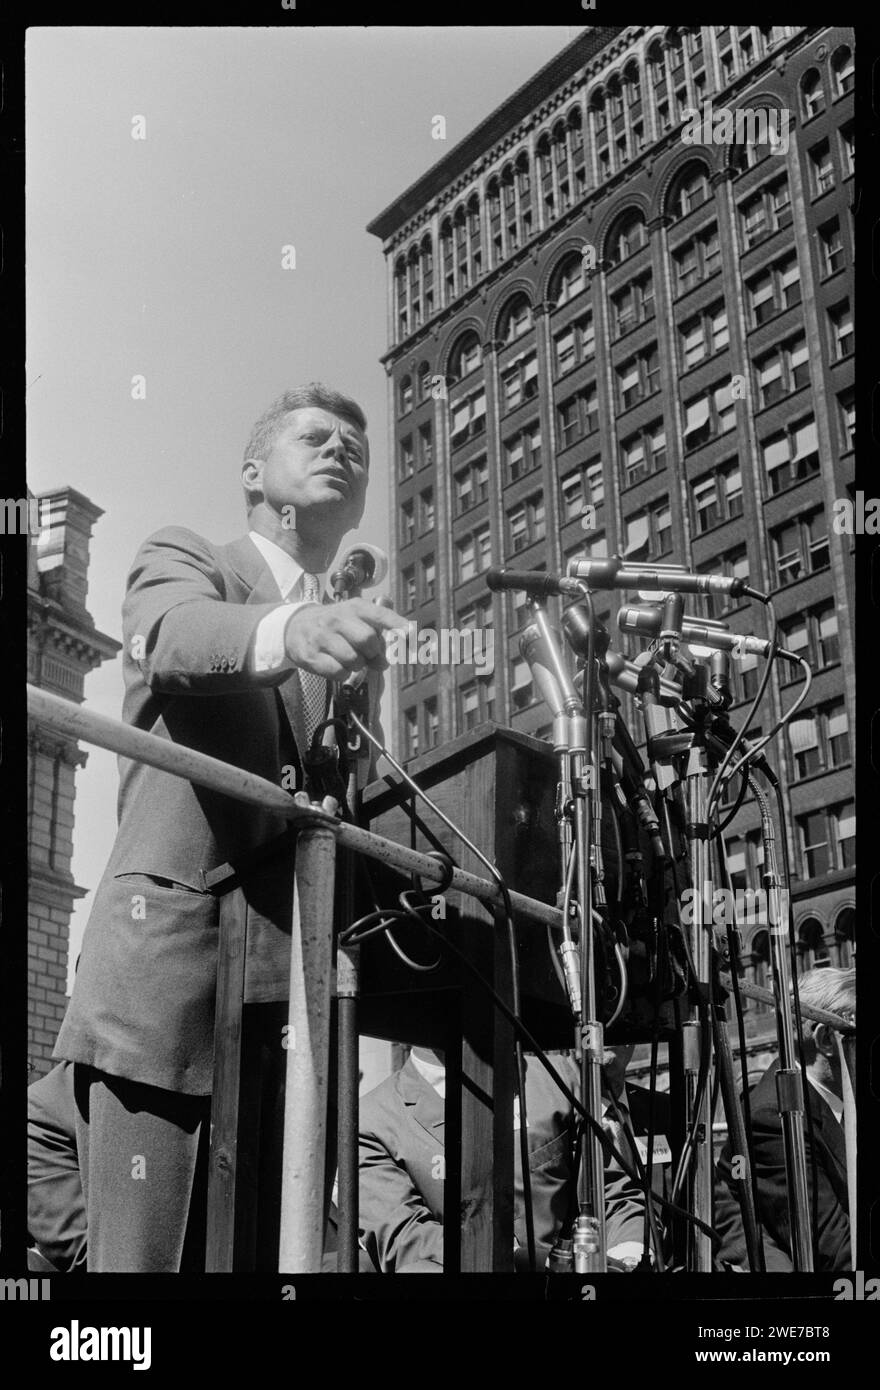 Le sénateur John F. Kennedy s'exprimant lors d'un rassemblement ouvrier le jour de la fête du travail à Cadillac Square à Detroit, Michigan, pendant sa campagne présidentielle, 9/6/1960. Photo de US News & World Report Magazine Collection. Banque D'Images